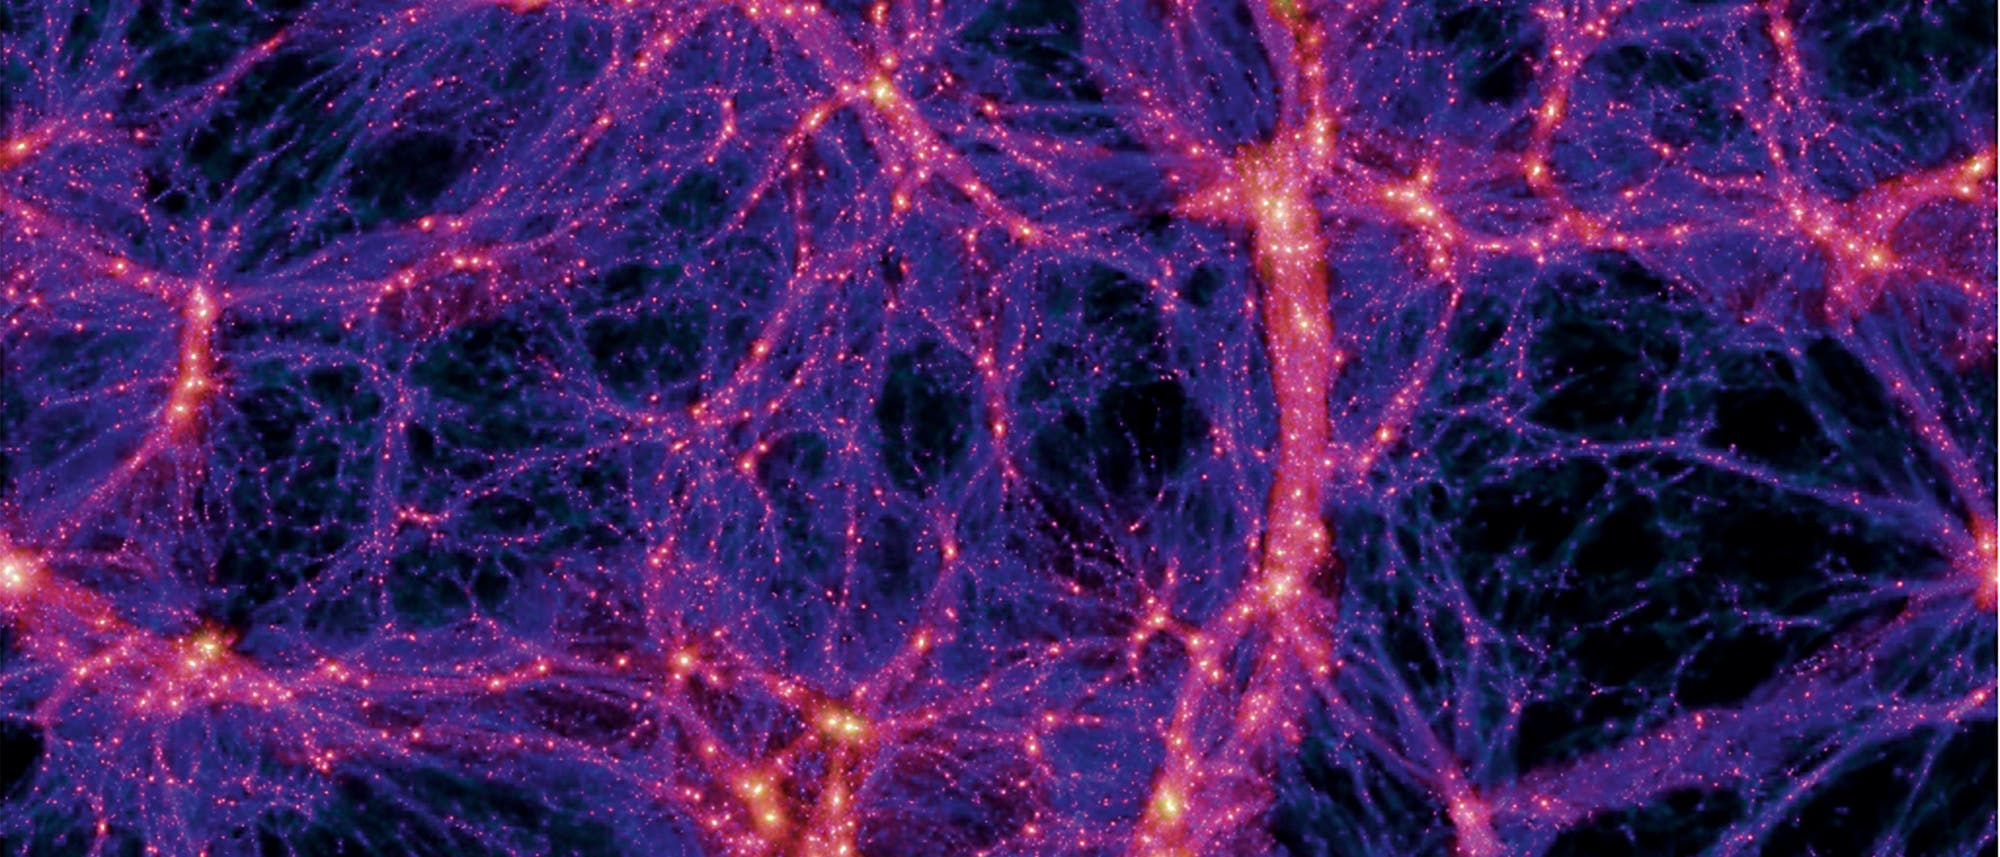 Ein Querschnitt durch das simulierte Volumen zeigt die Verteilung der Dunklen Materie im Universum (links). Eine Zoom-Technik erlaubt es, die Auflösung in einzelnen Bereichen der Simulation zu erhöhen. Im gezeigten Beispiel ist aus dem Bild links eine Galaxie von der Größe der Milchstraße ausgewählt und im Bild oben mit höherer Auflösung simuliert.